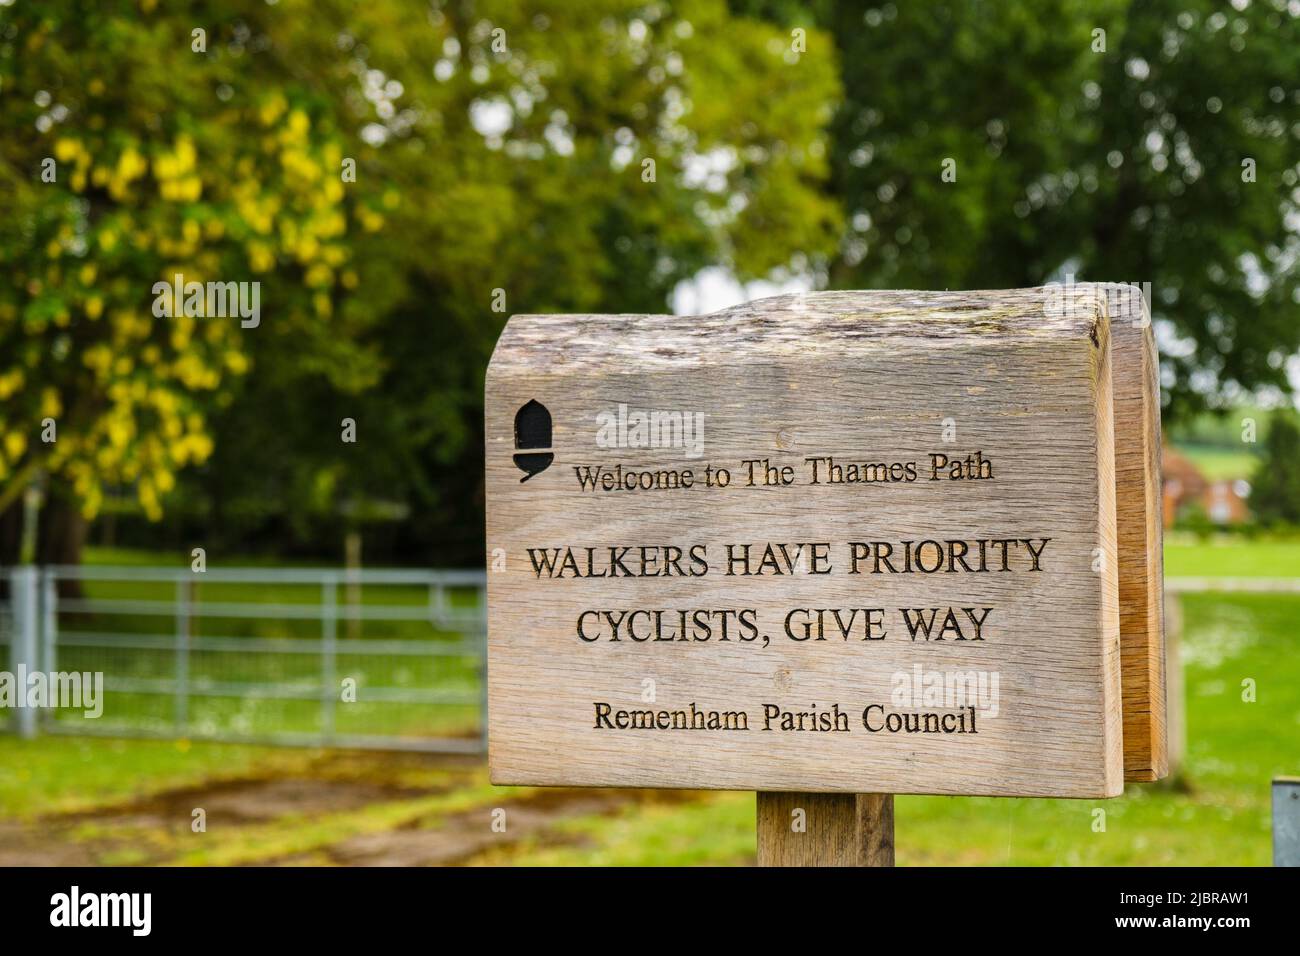 Panneau Thames Path donnant des instructions aux cyclistes pour céder la place. Remenham, Berkshire, Angleterre, Royaume-Uni, Grande-Bretagne Banque D'Images